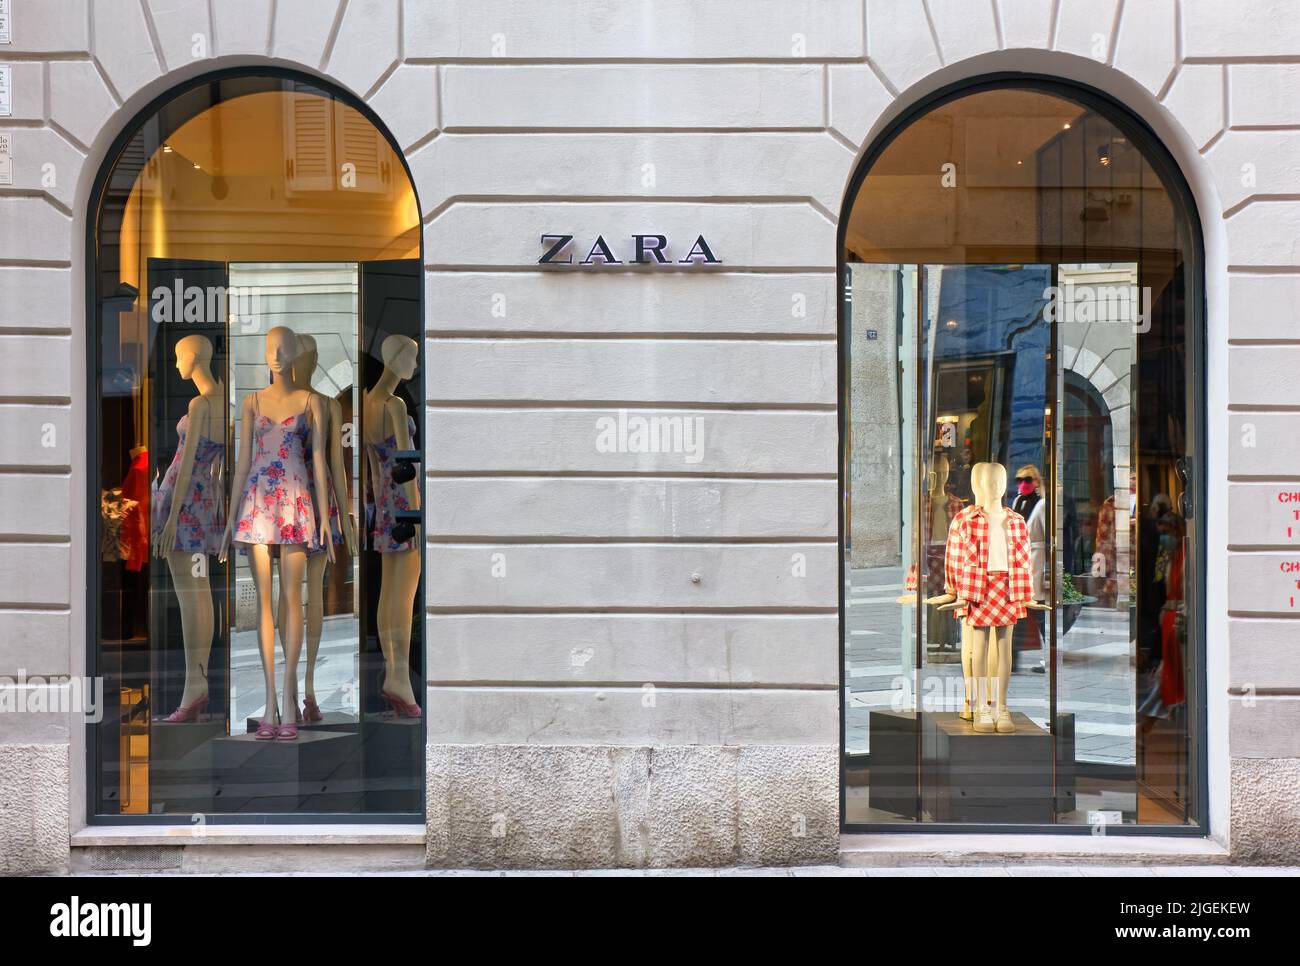 Zara italia immagini e fotografie stock ad alta risoluzione - Alamy